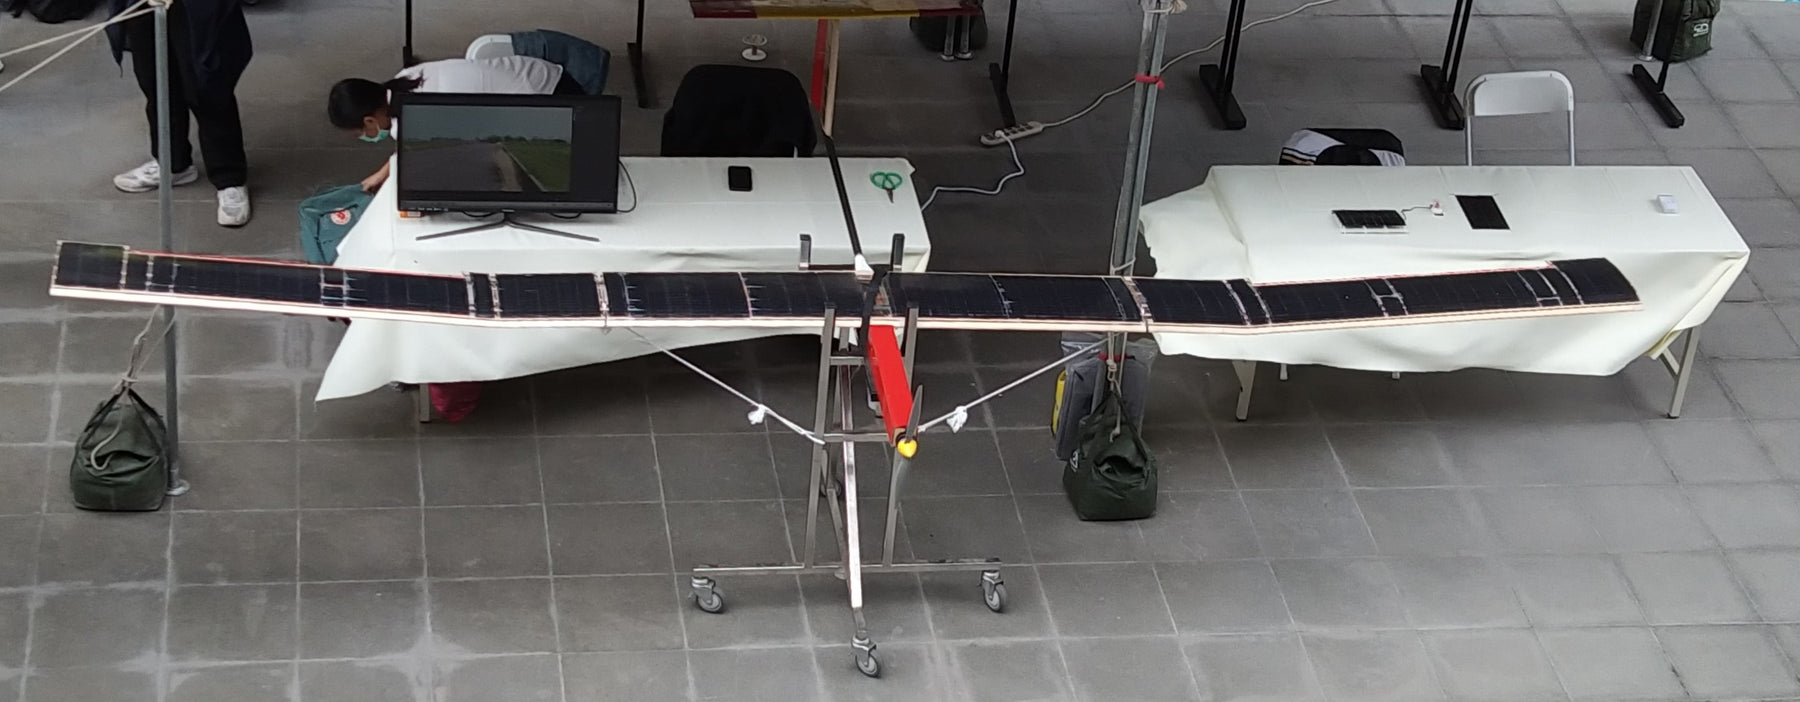 Solar Drohnen   fast unbegrenzte Reichweite und Flugzeit